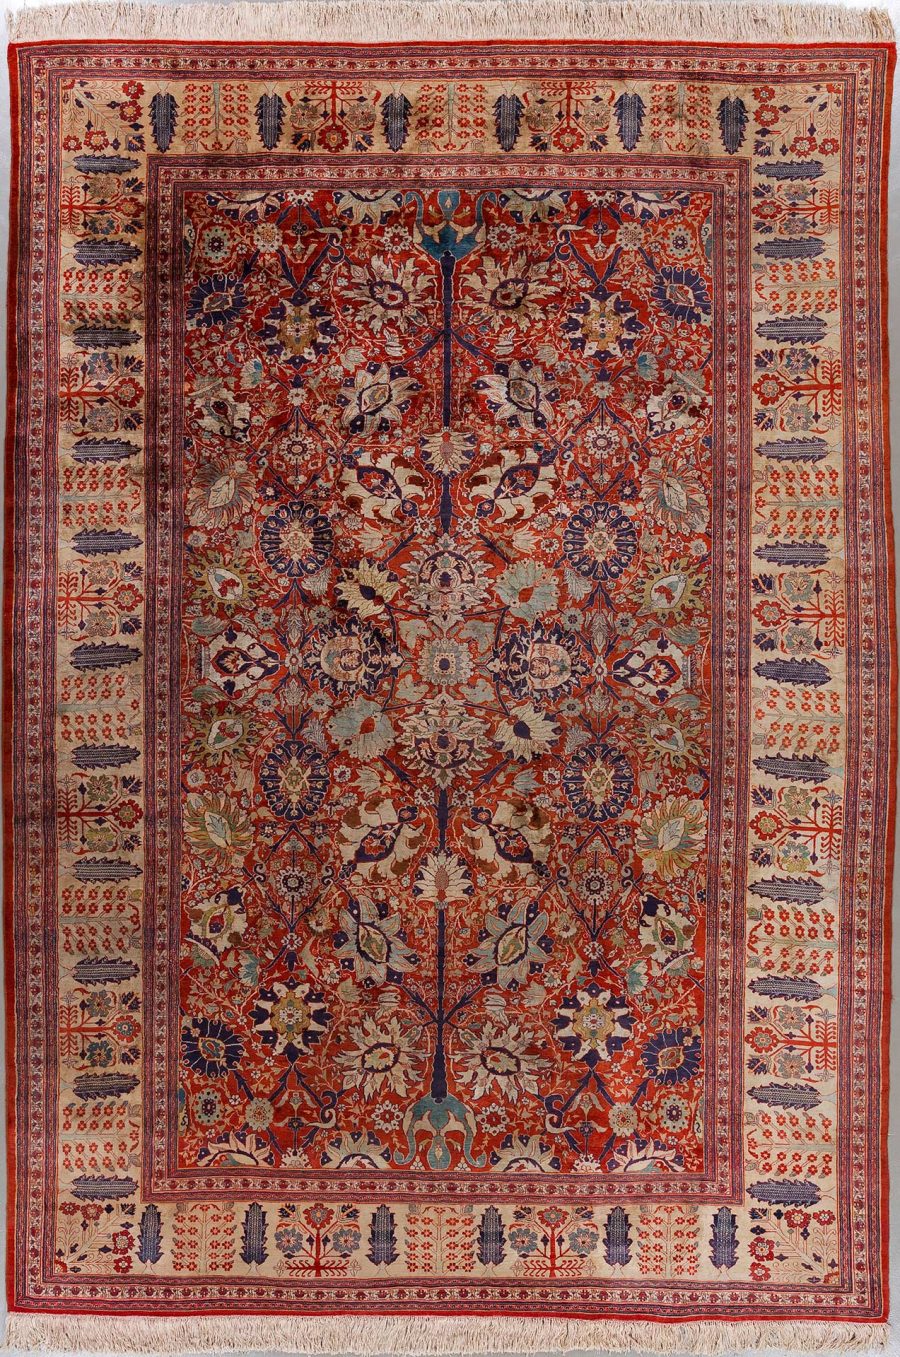 Antiker handgeknüpfter persischer Teppich mit detailreichen floralen und geometrischen Mustern in Rot-, Blau- und Beigetönen und weißer Fransenkante.